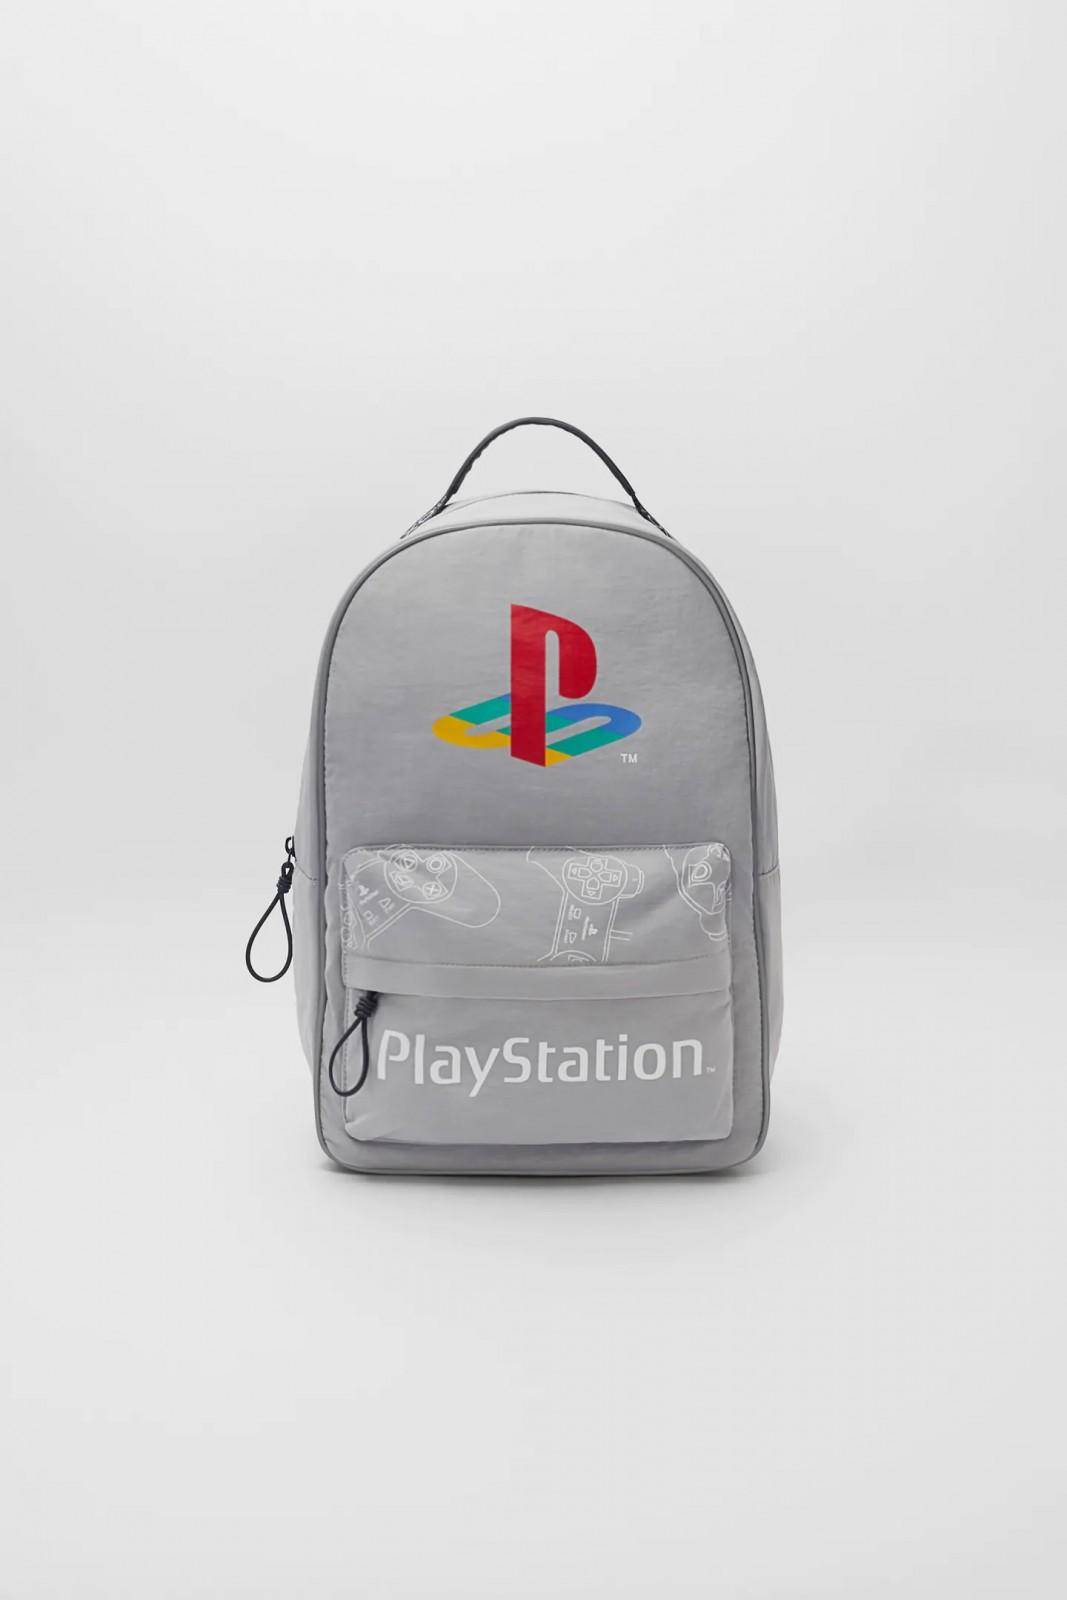 Mochila PlayStation